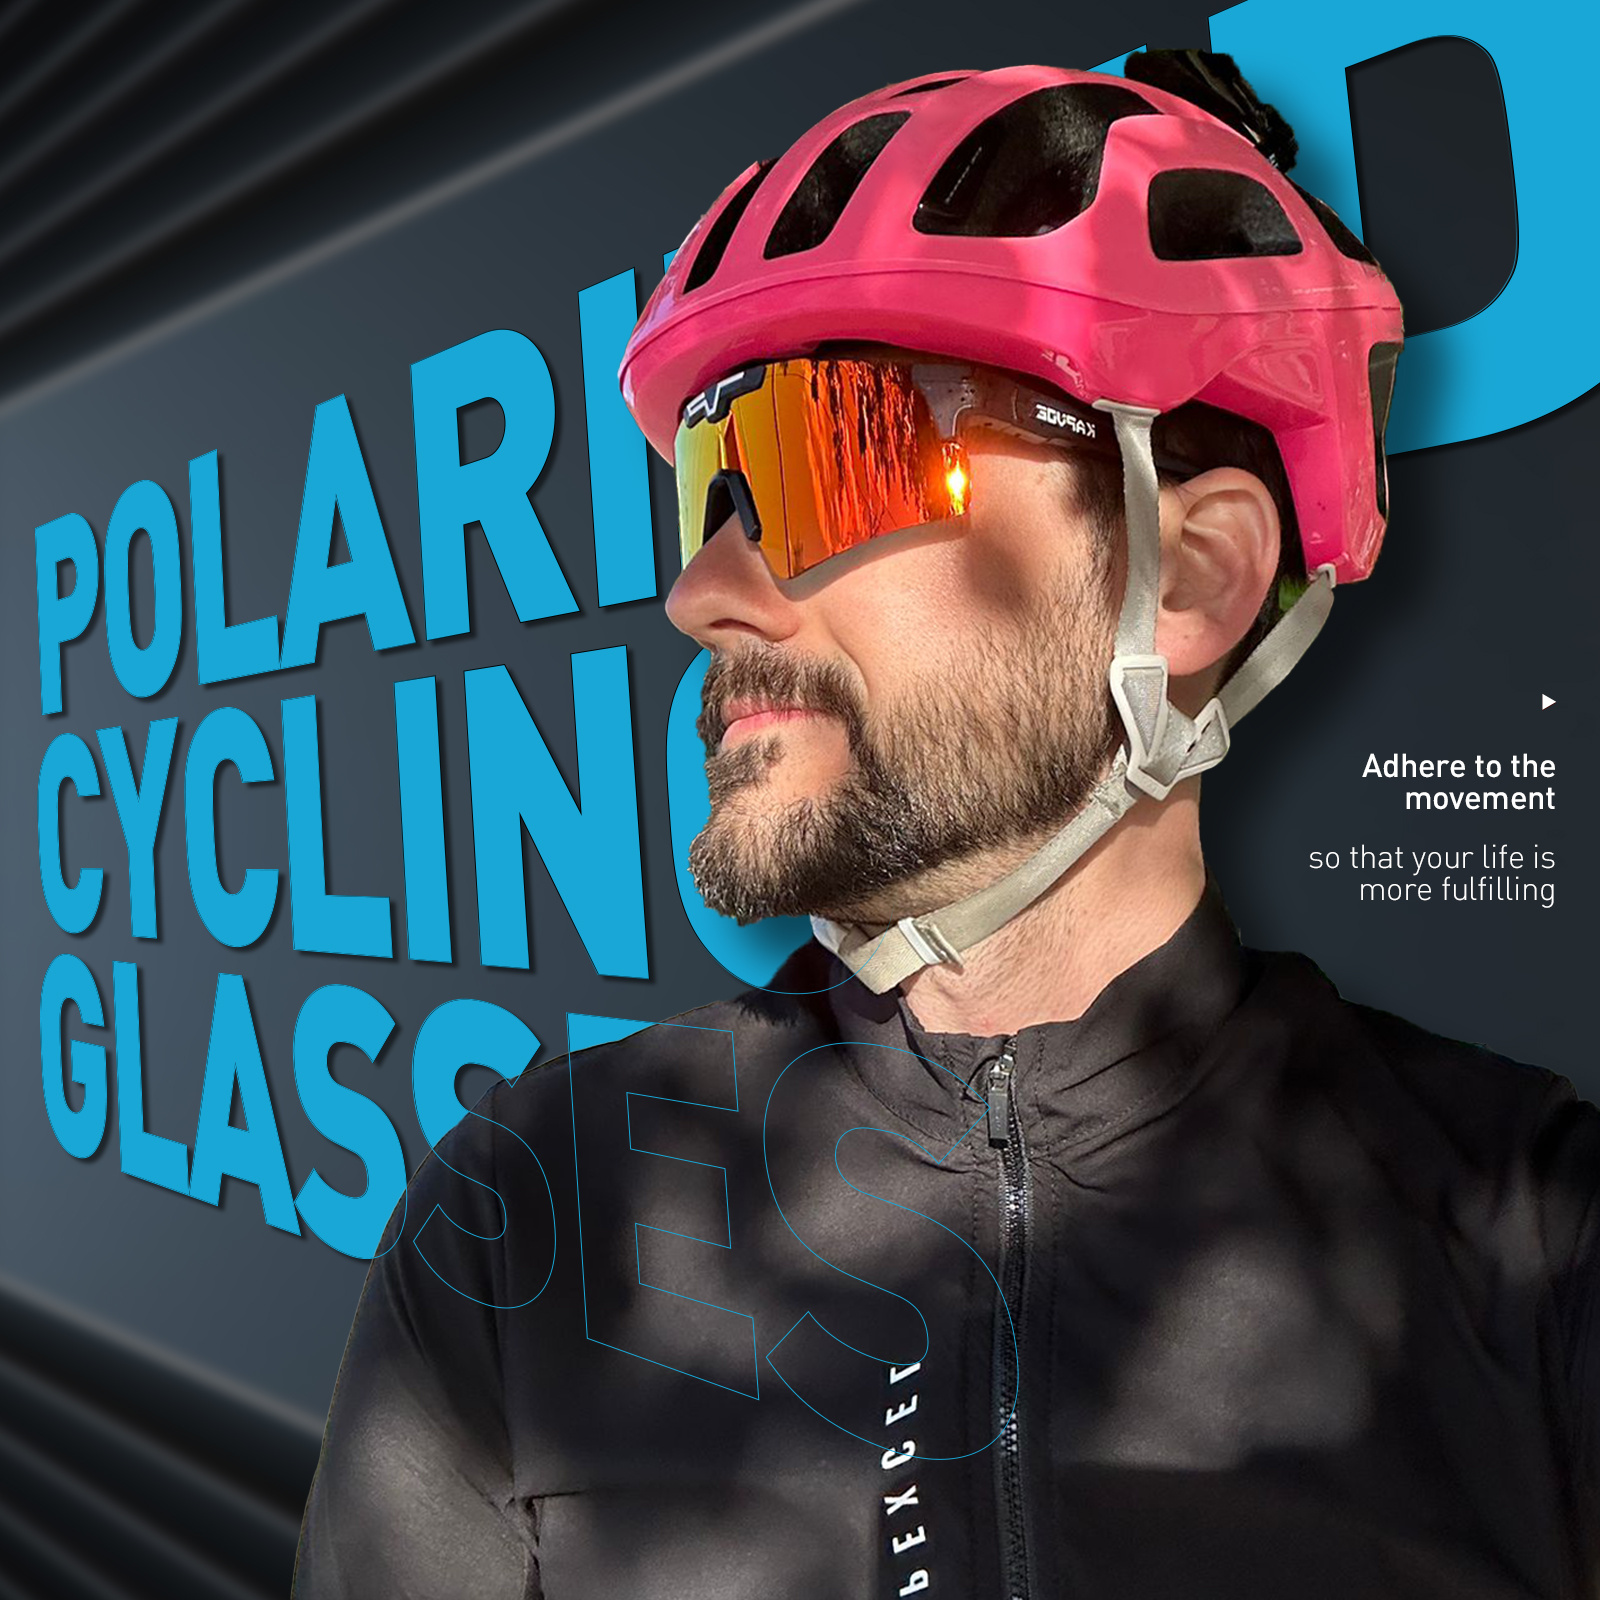 KAPVOE Gafas de Ciclismo Polarizadas Hombre MTB Gafas Mujer Gafas